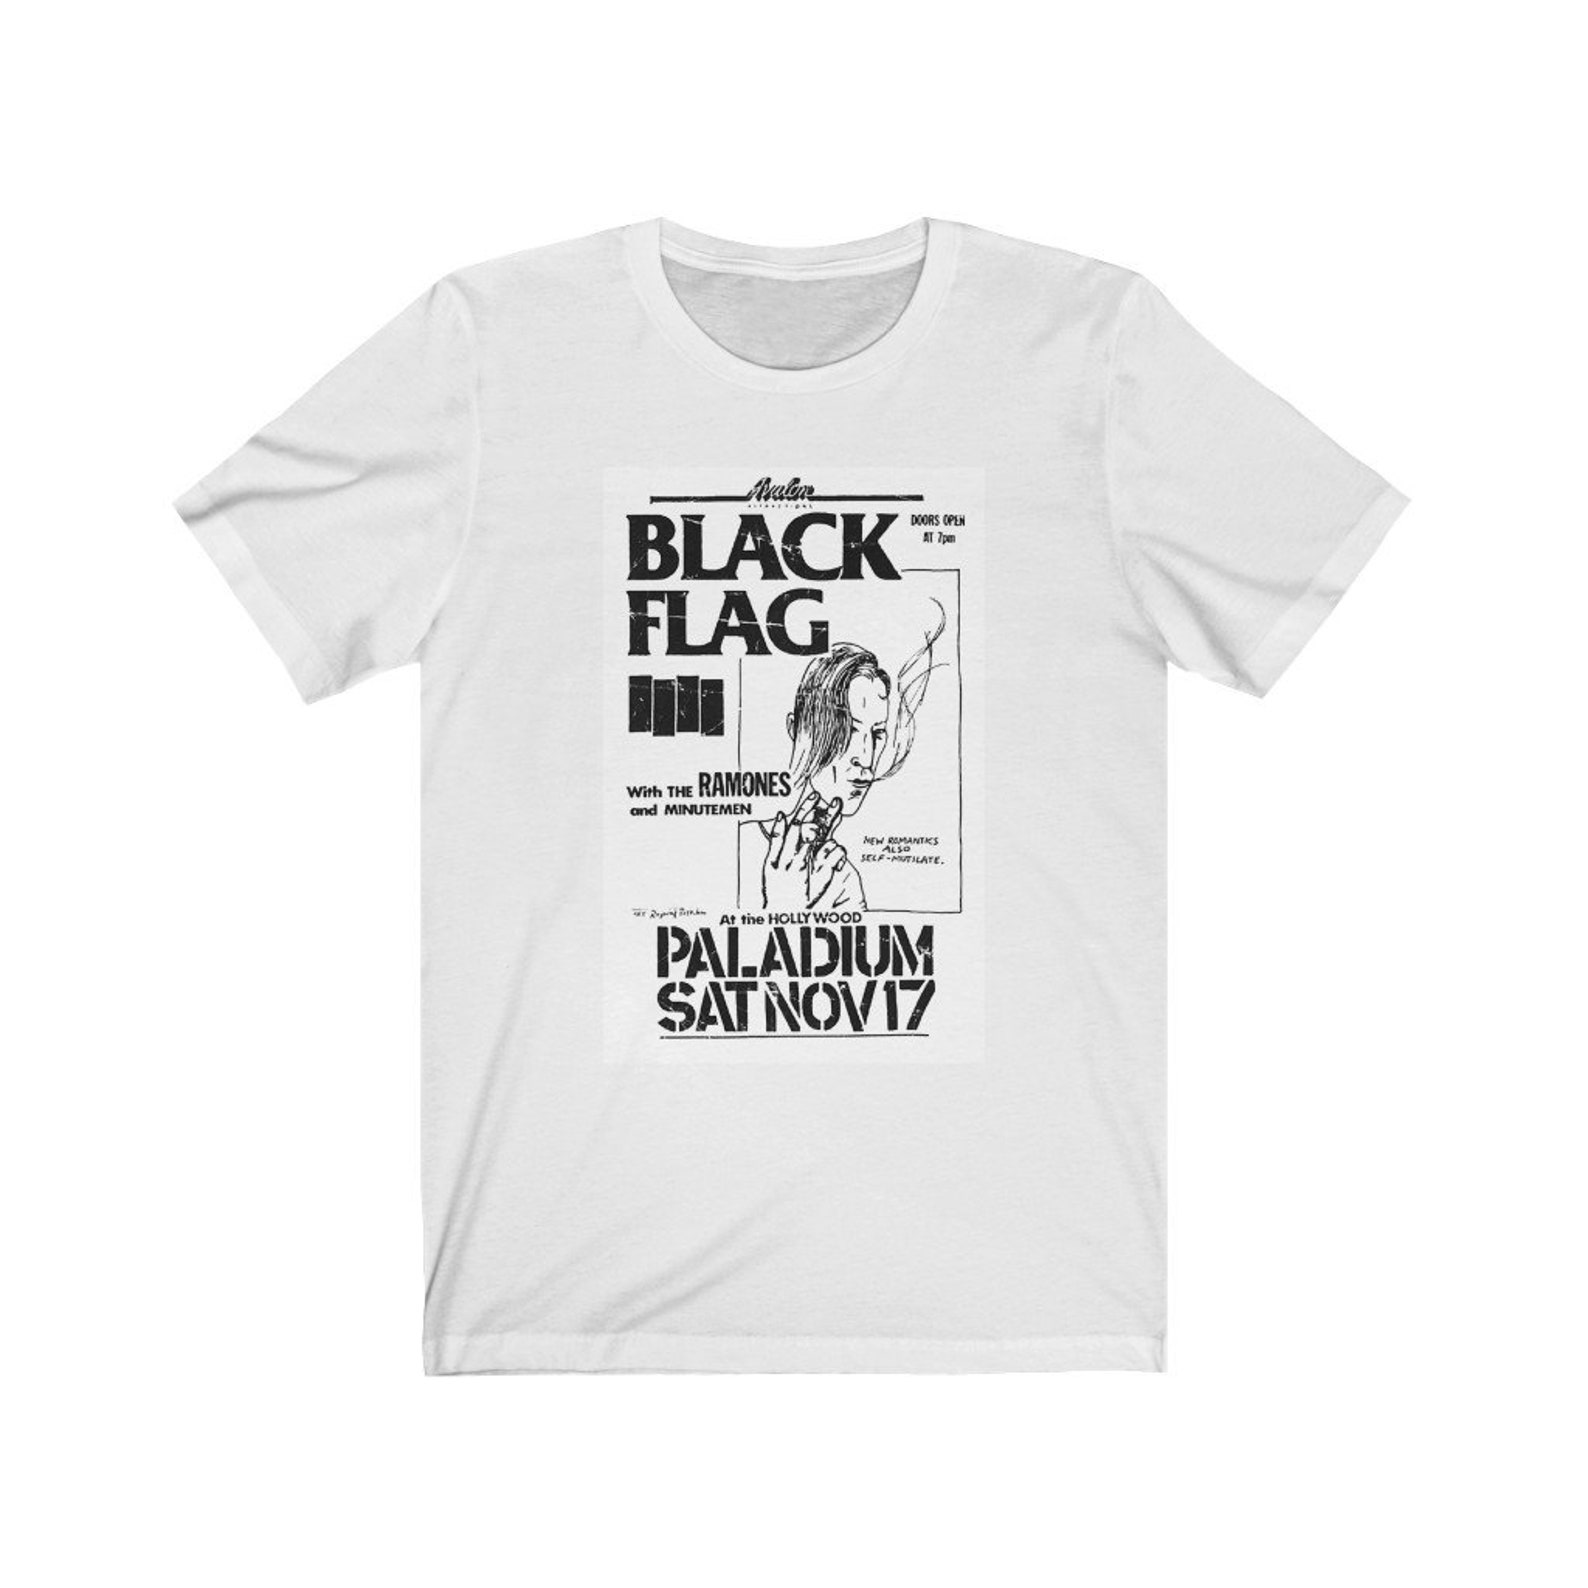 Black Flag Palladium Short Sleeve Tee - Etsy